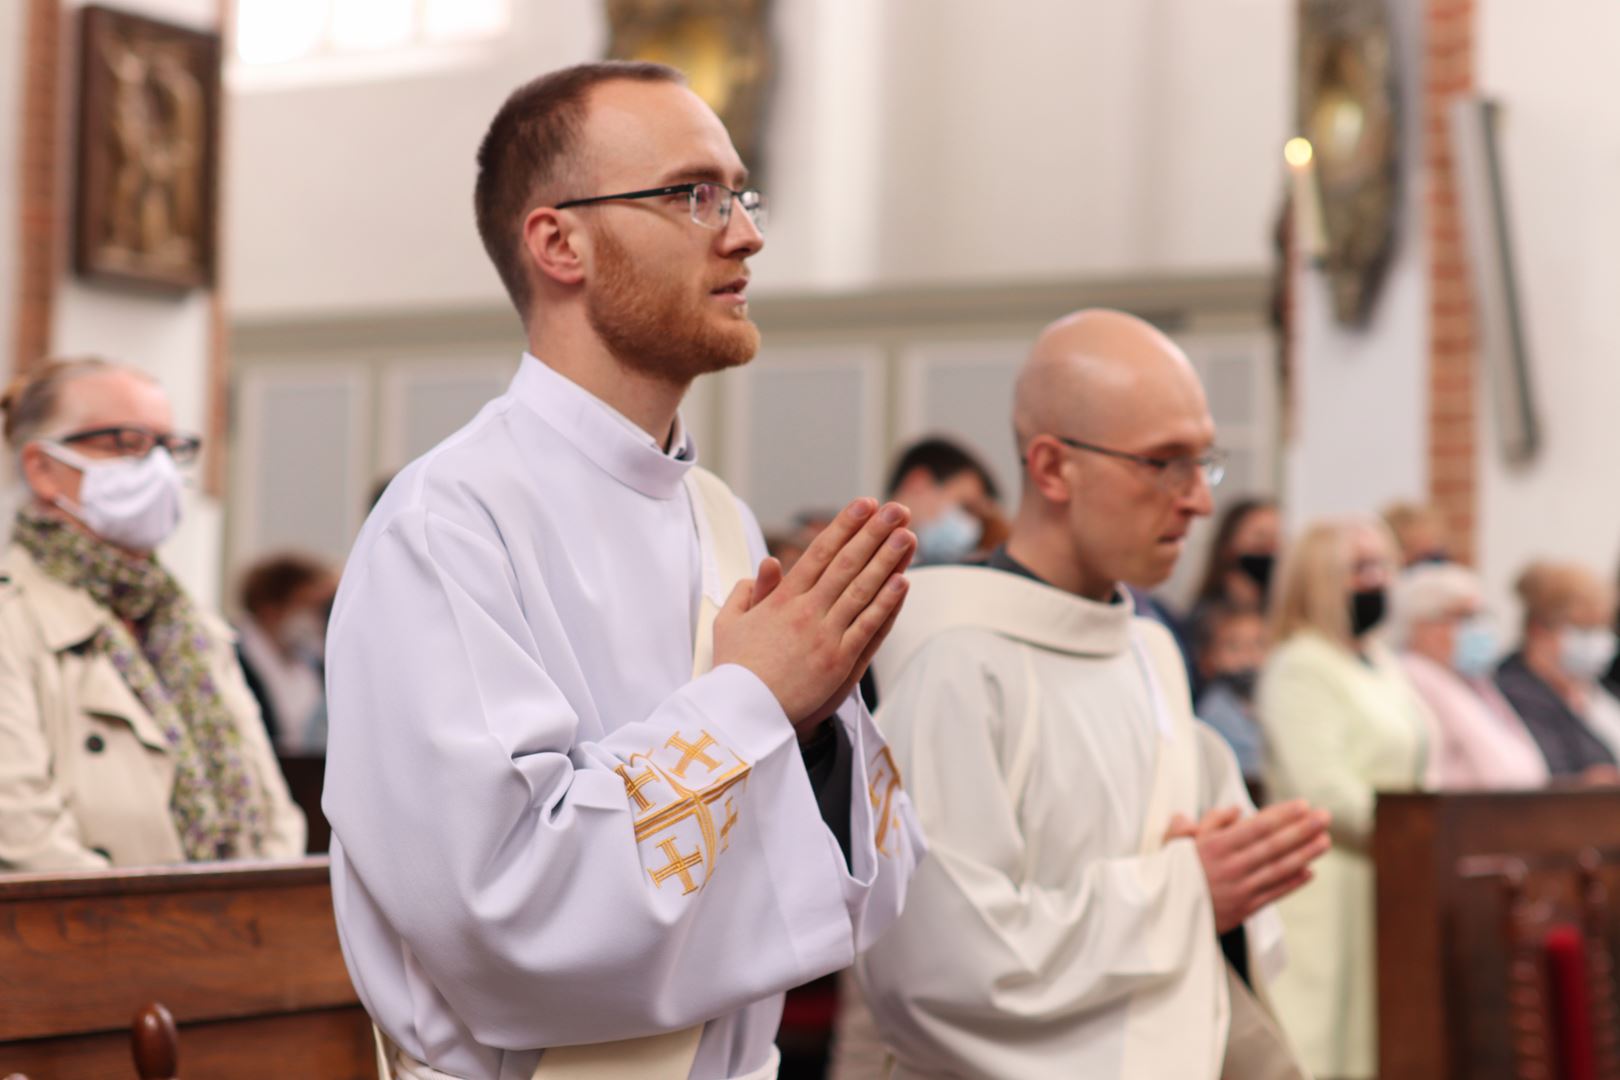 Vigningens sakrament för diakoner och präster hos Gråbröderna den 22 maj 2021, i Gdańsk, Polen. Foto: Gråbröderna